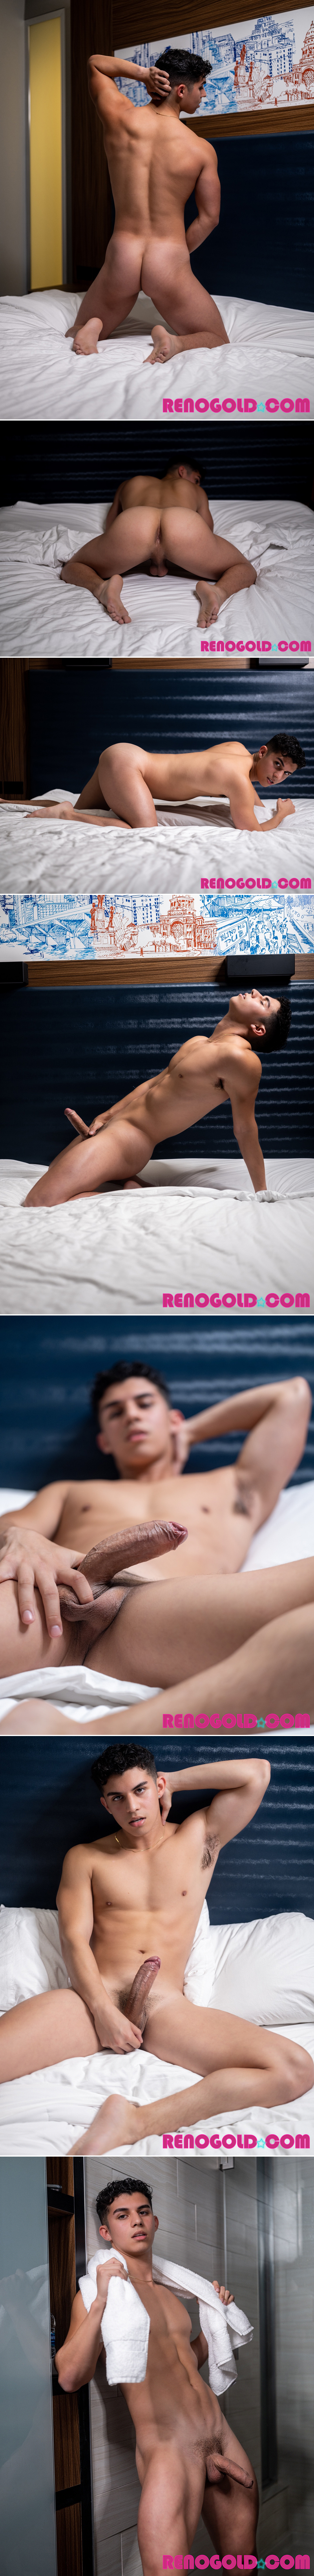 Felipe Phegyz's First Porno! at RenoGold.com